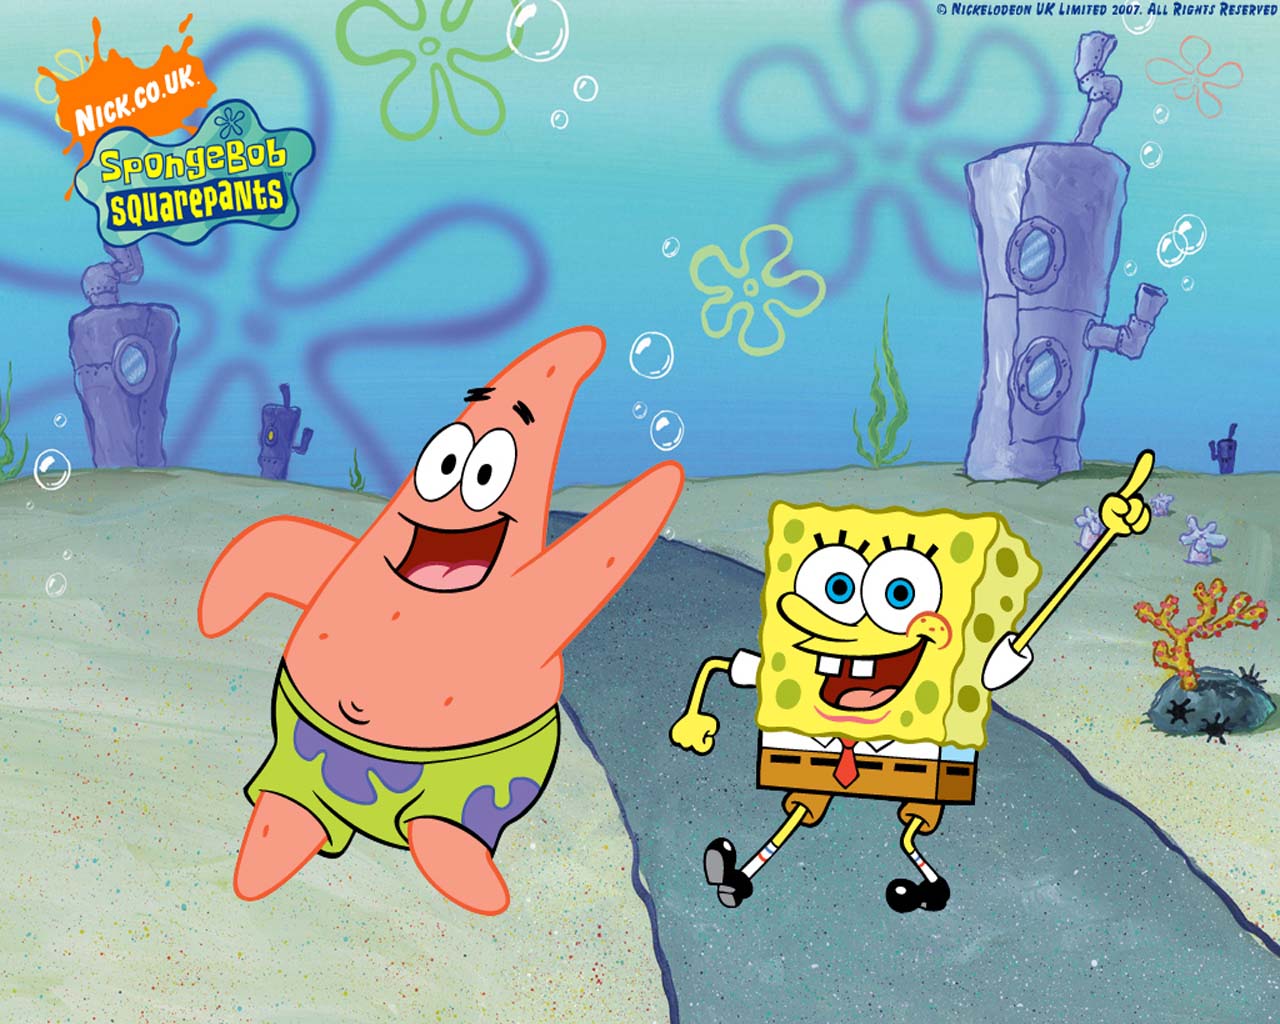 Spongebob Squarepants And Patrick Star Dancing On The - Spongebob Squarepants Season 12 Episode 14 - HD Wallpaper 